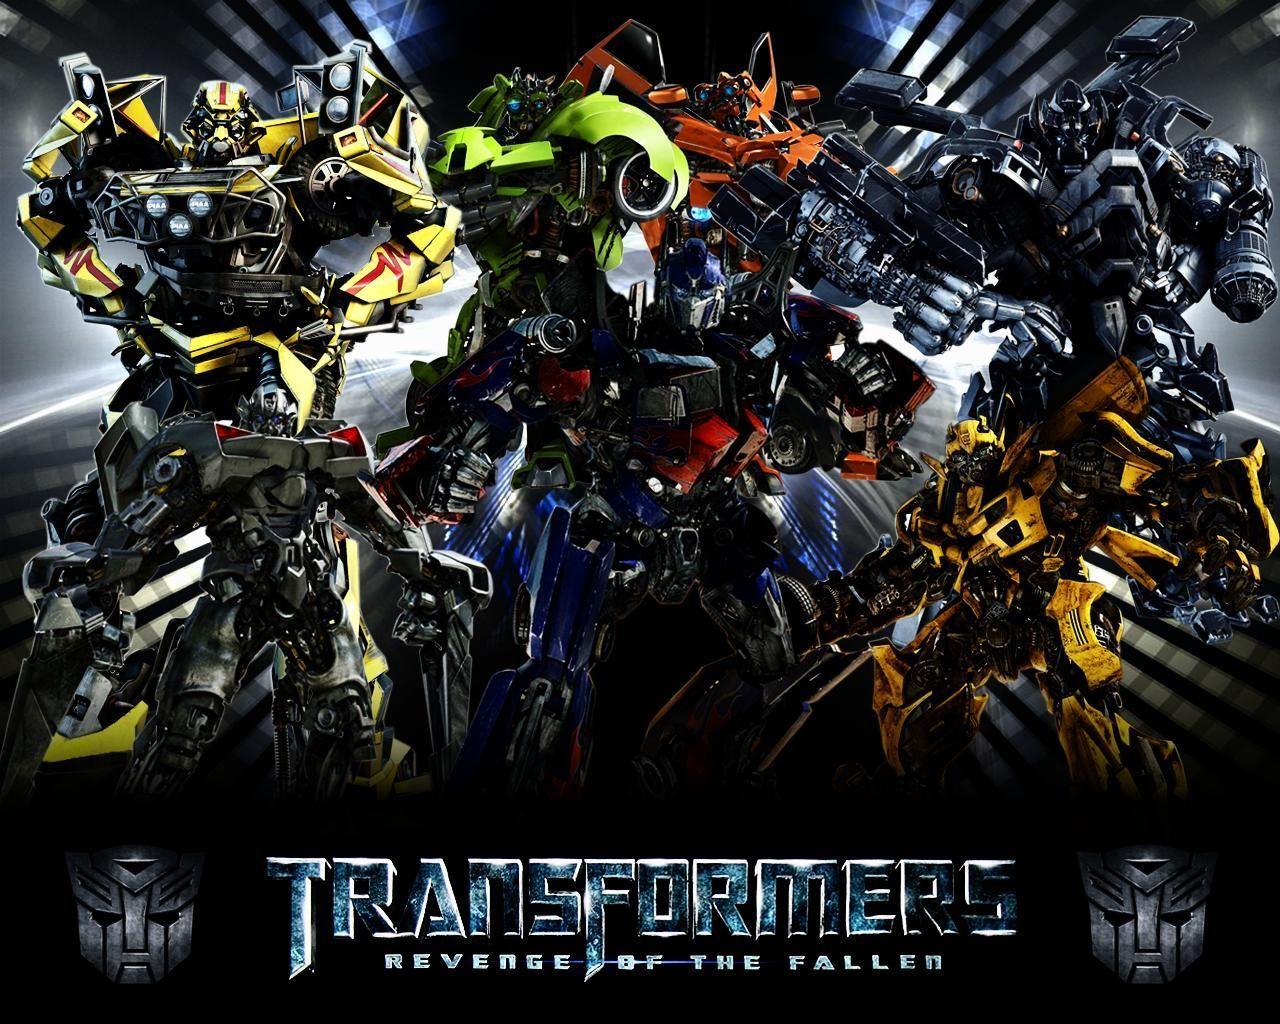 Decepticons Vs Autobots Wallpaper HD Resolution. Transformers movie, Transformers Transformers